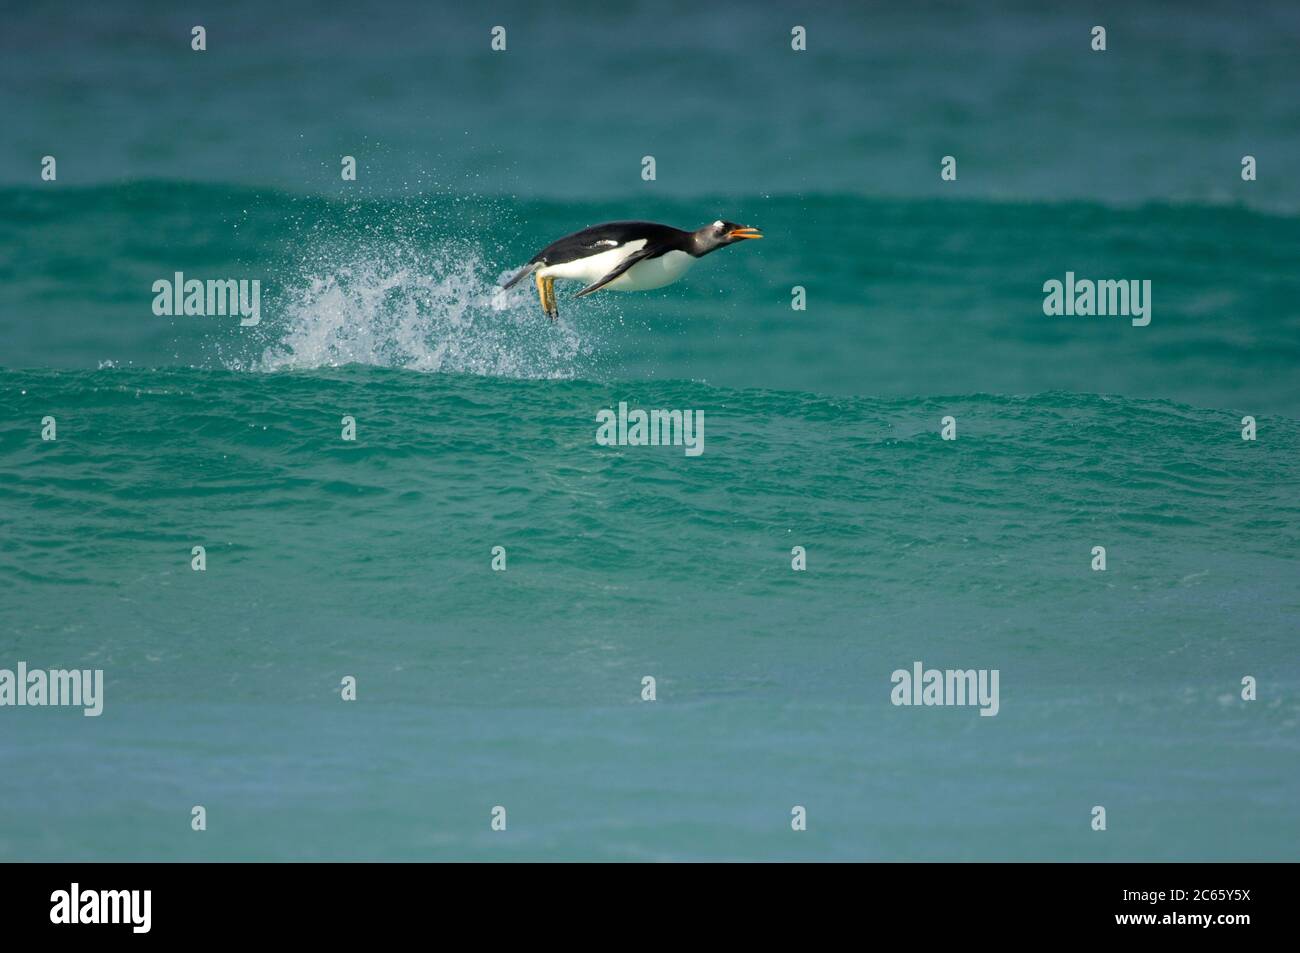 Avec une vitesse de nage allant jusqu'à 30 km/h, le Penguin Gentoo (Pygoscelis papouasie) est le fastes parmi les pingouins. Le porpoising est un moyen très efficace de voyager à grande vitesse car l'animal tire profit de la résistance plus faible dans l'air que sous l'eau et est capable de respirer avec le bec ouvert. Banque D'Images